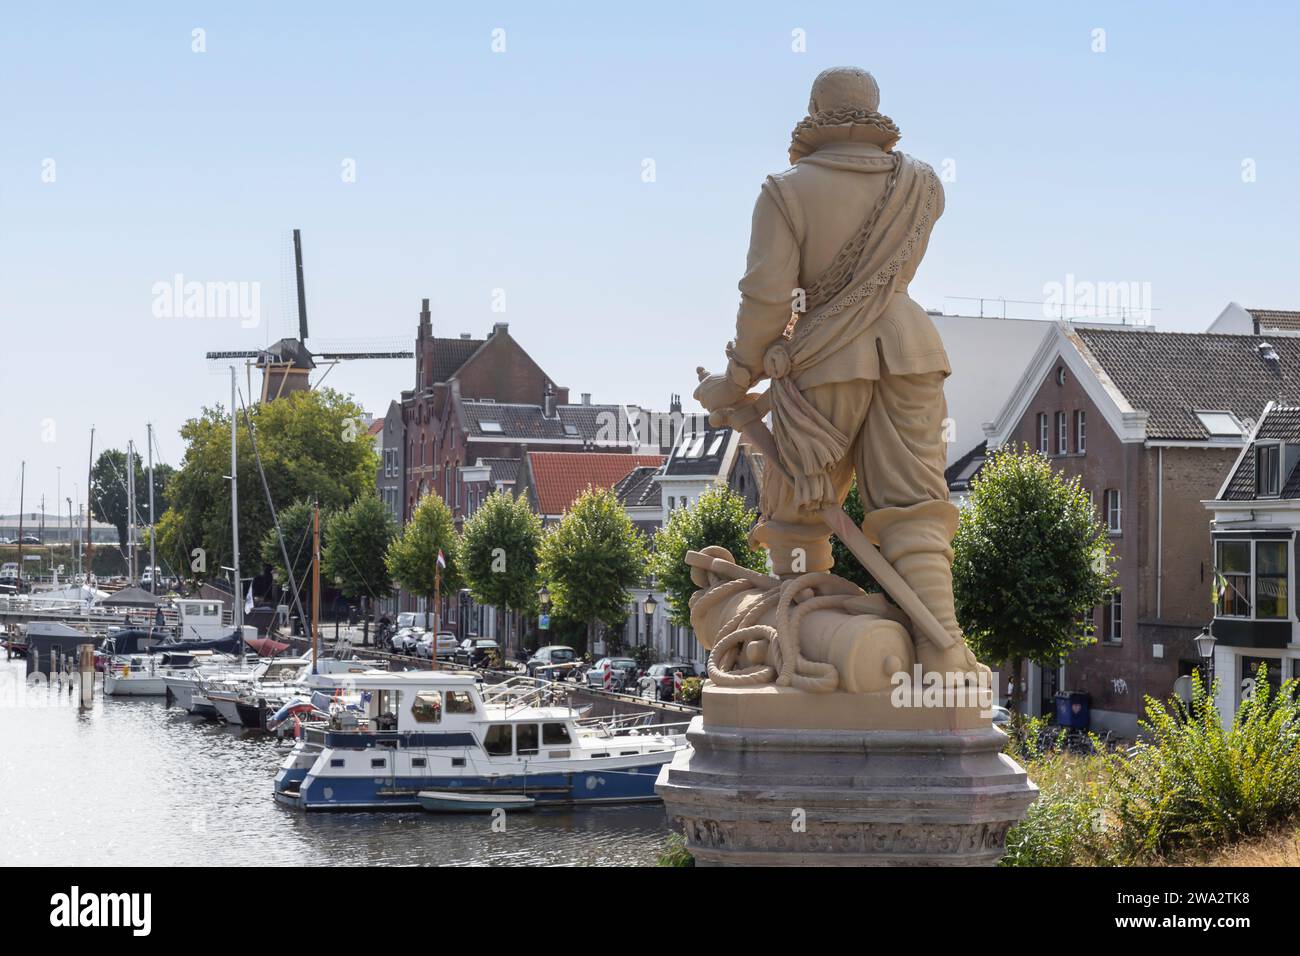 Statua di Piet Pieterszoon Hein, nota anche come Piet Hein, nata il 25 novembre 1577 a Delfshaven. Foto Stock